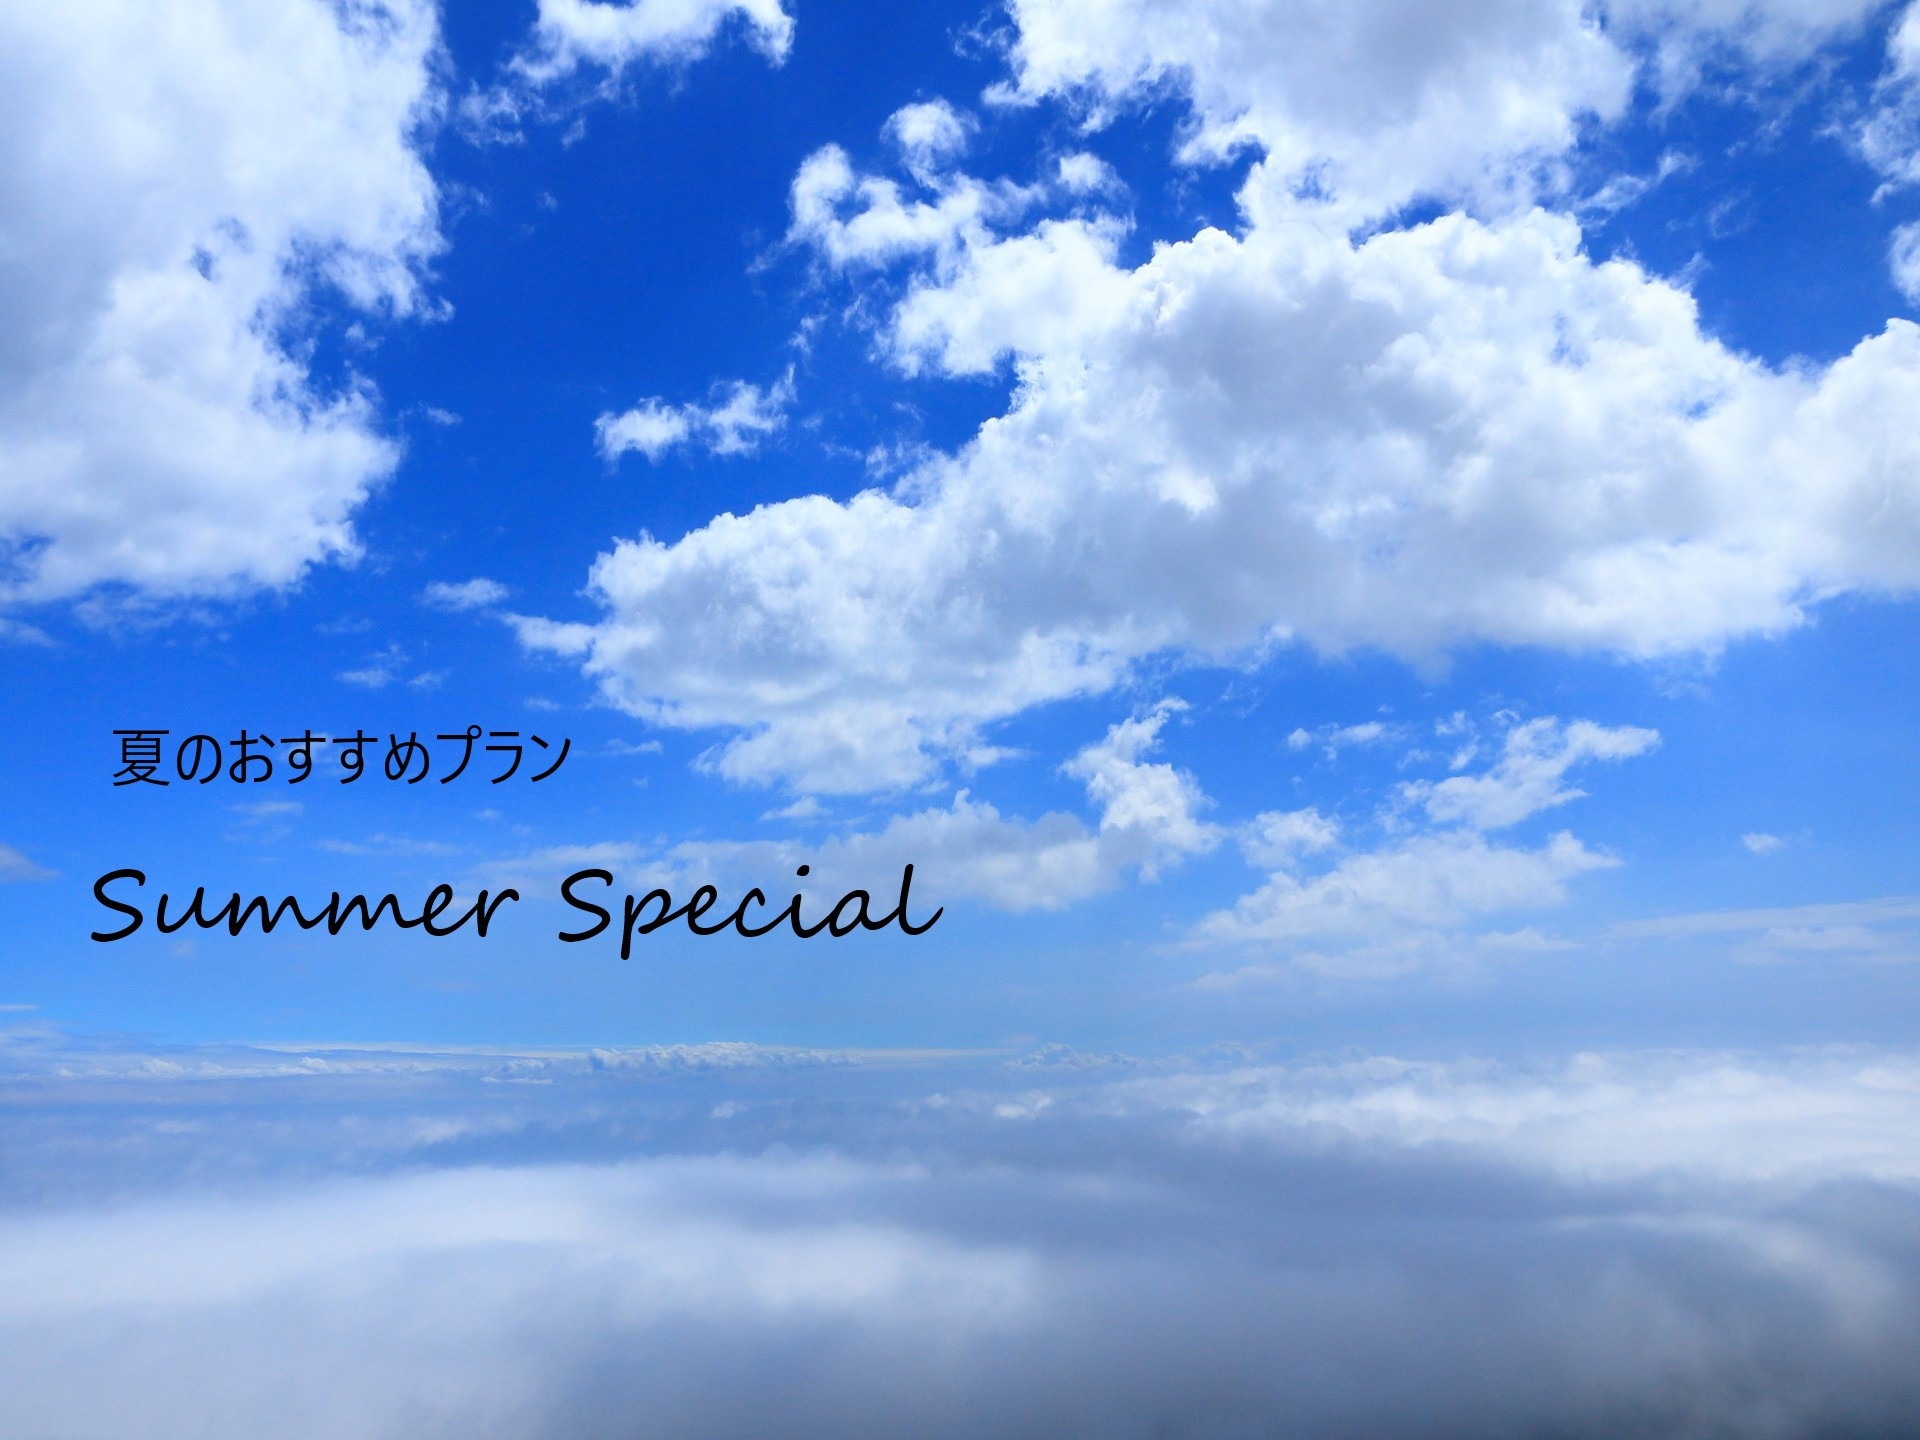 【季節割】夏から初秋の期間販売『Summer Special』(朝食つき)JR函館駅より徒歩1分